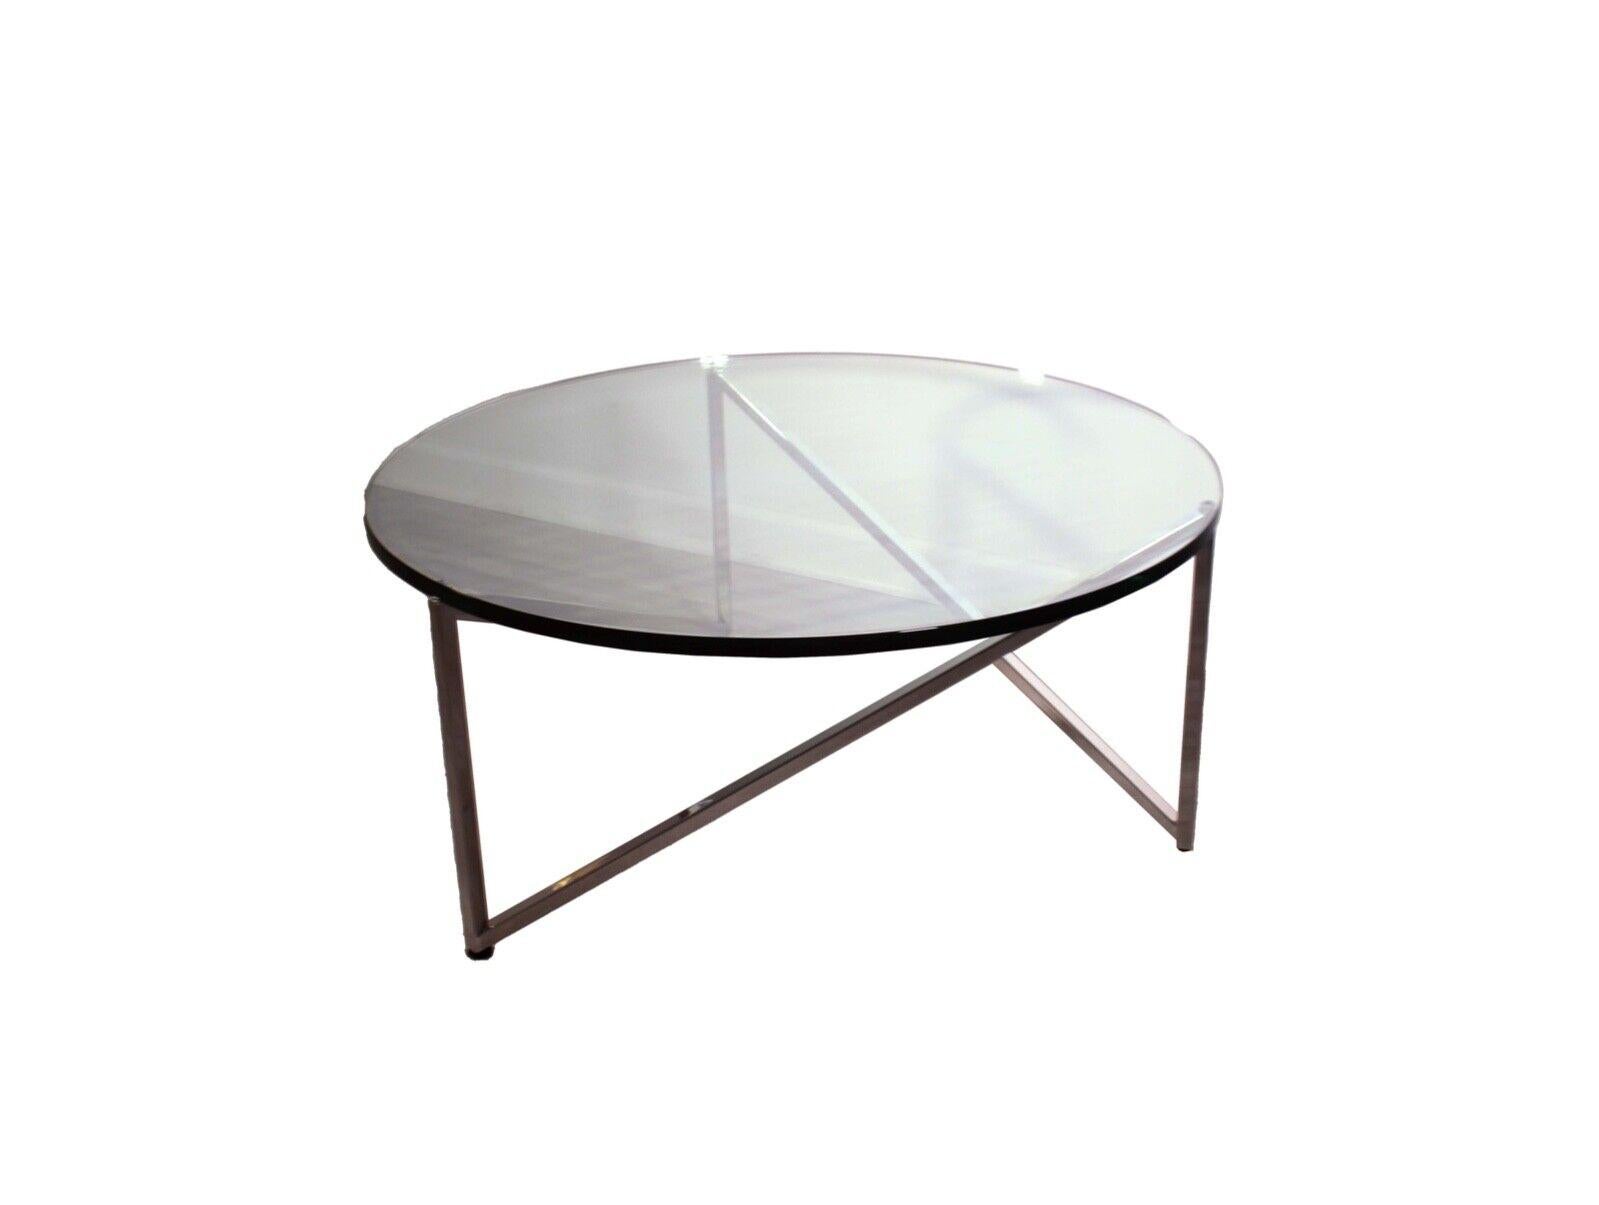 Cette table basse ronde contemporaine à plateau en verre présente une base en acier inoxydable et un design épuré et moderne attribué à Breuton. Le plateau en verre épais offre une surface solide et attrayante qui ne manquera pas d'alimenter les